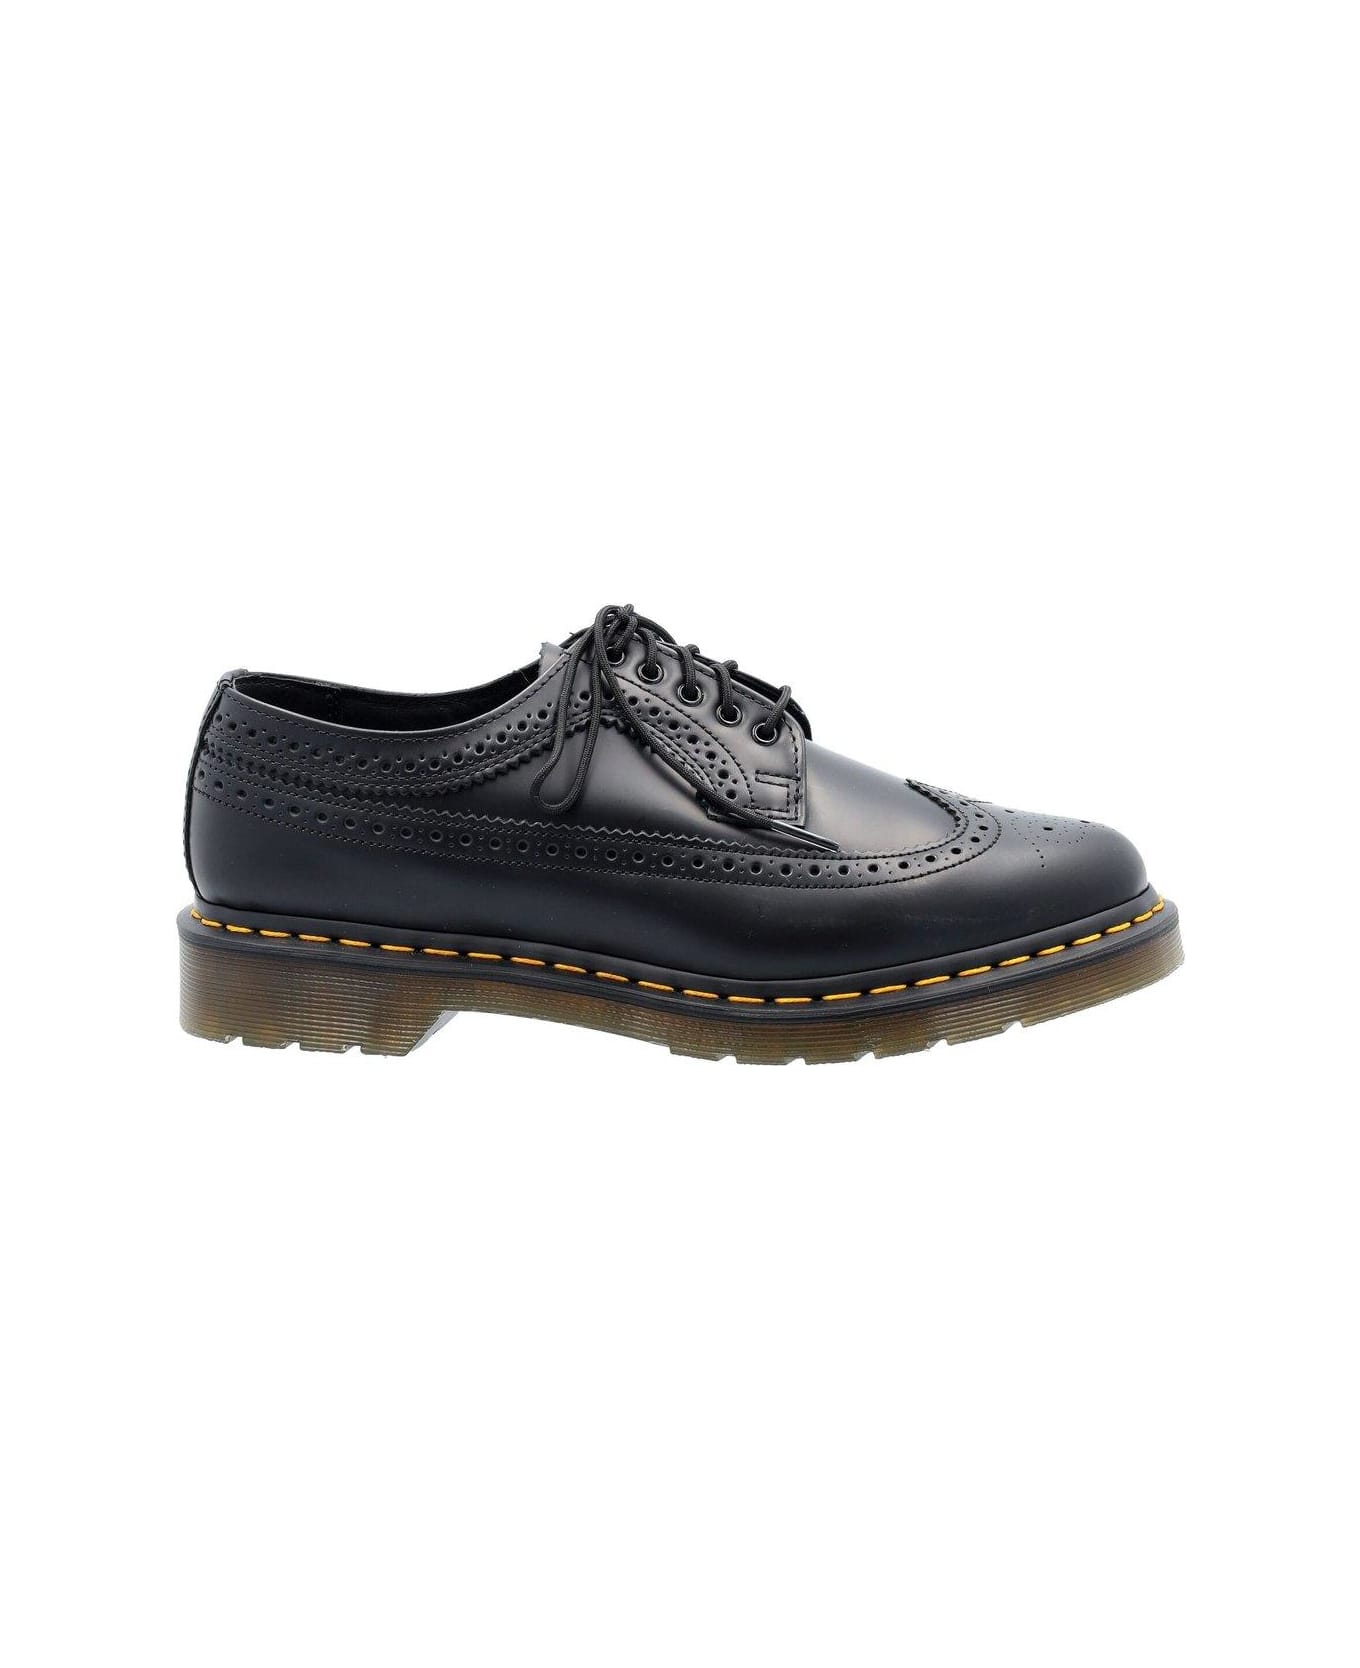 Dr. Martens 3989 Lace-up Brogue Shoes - black